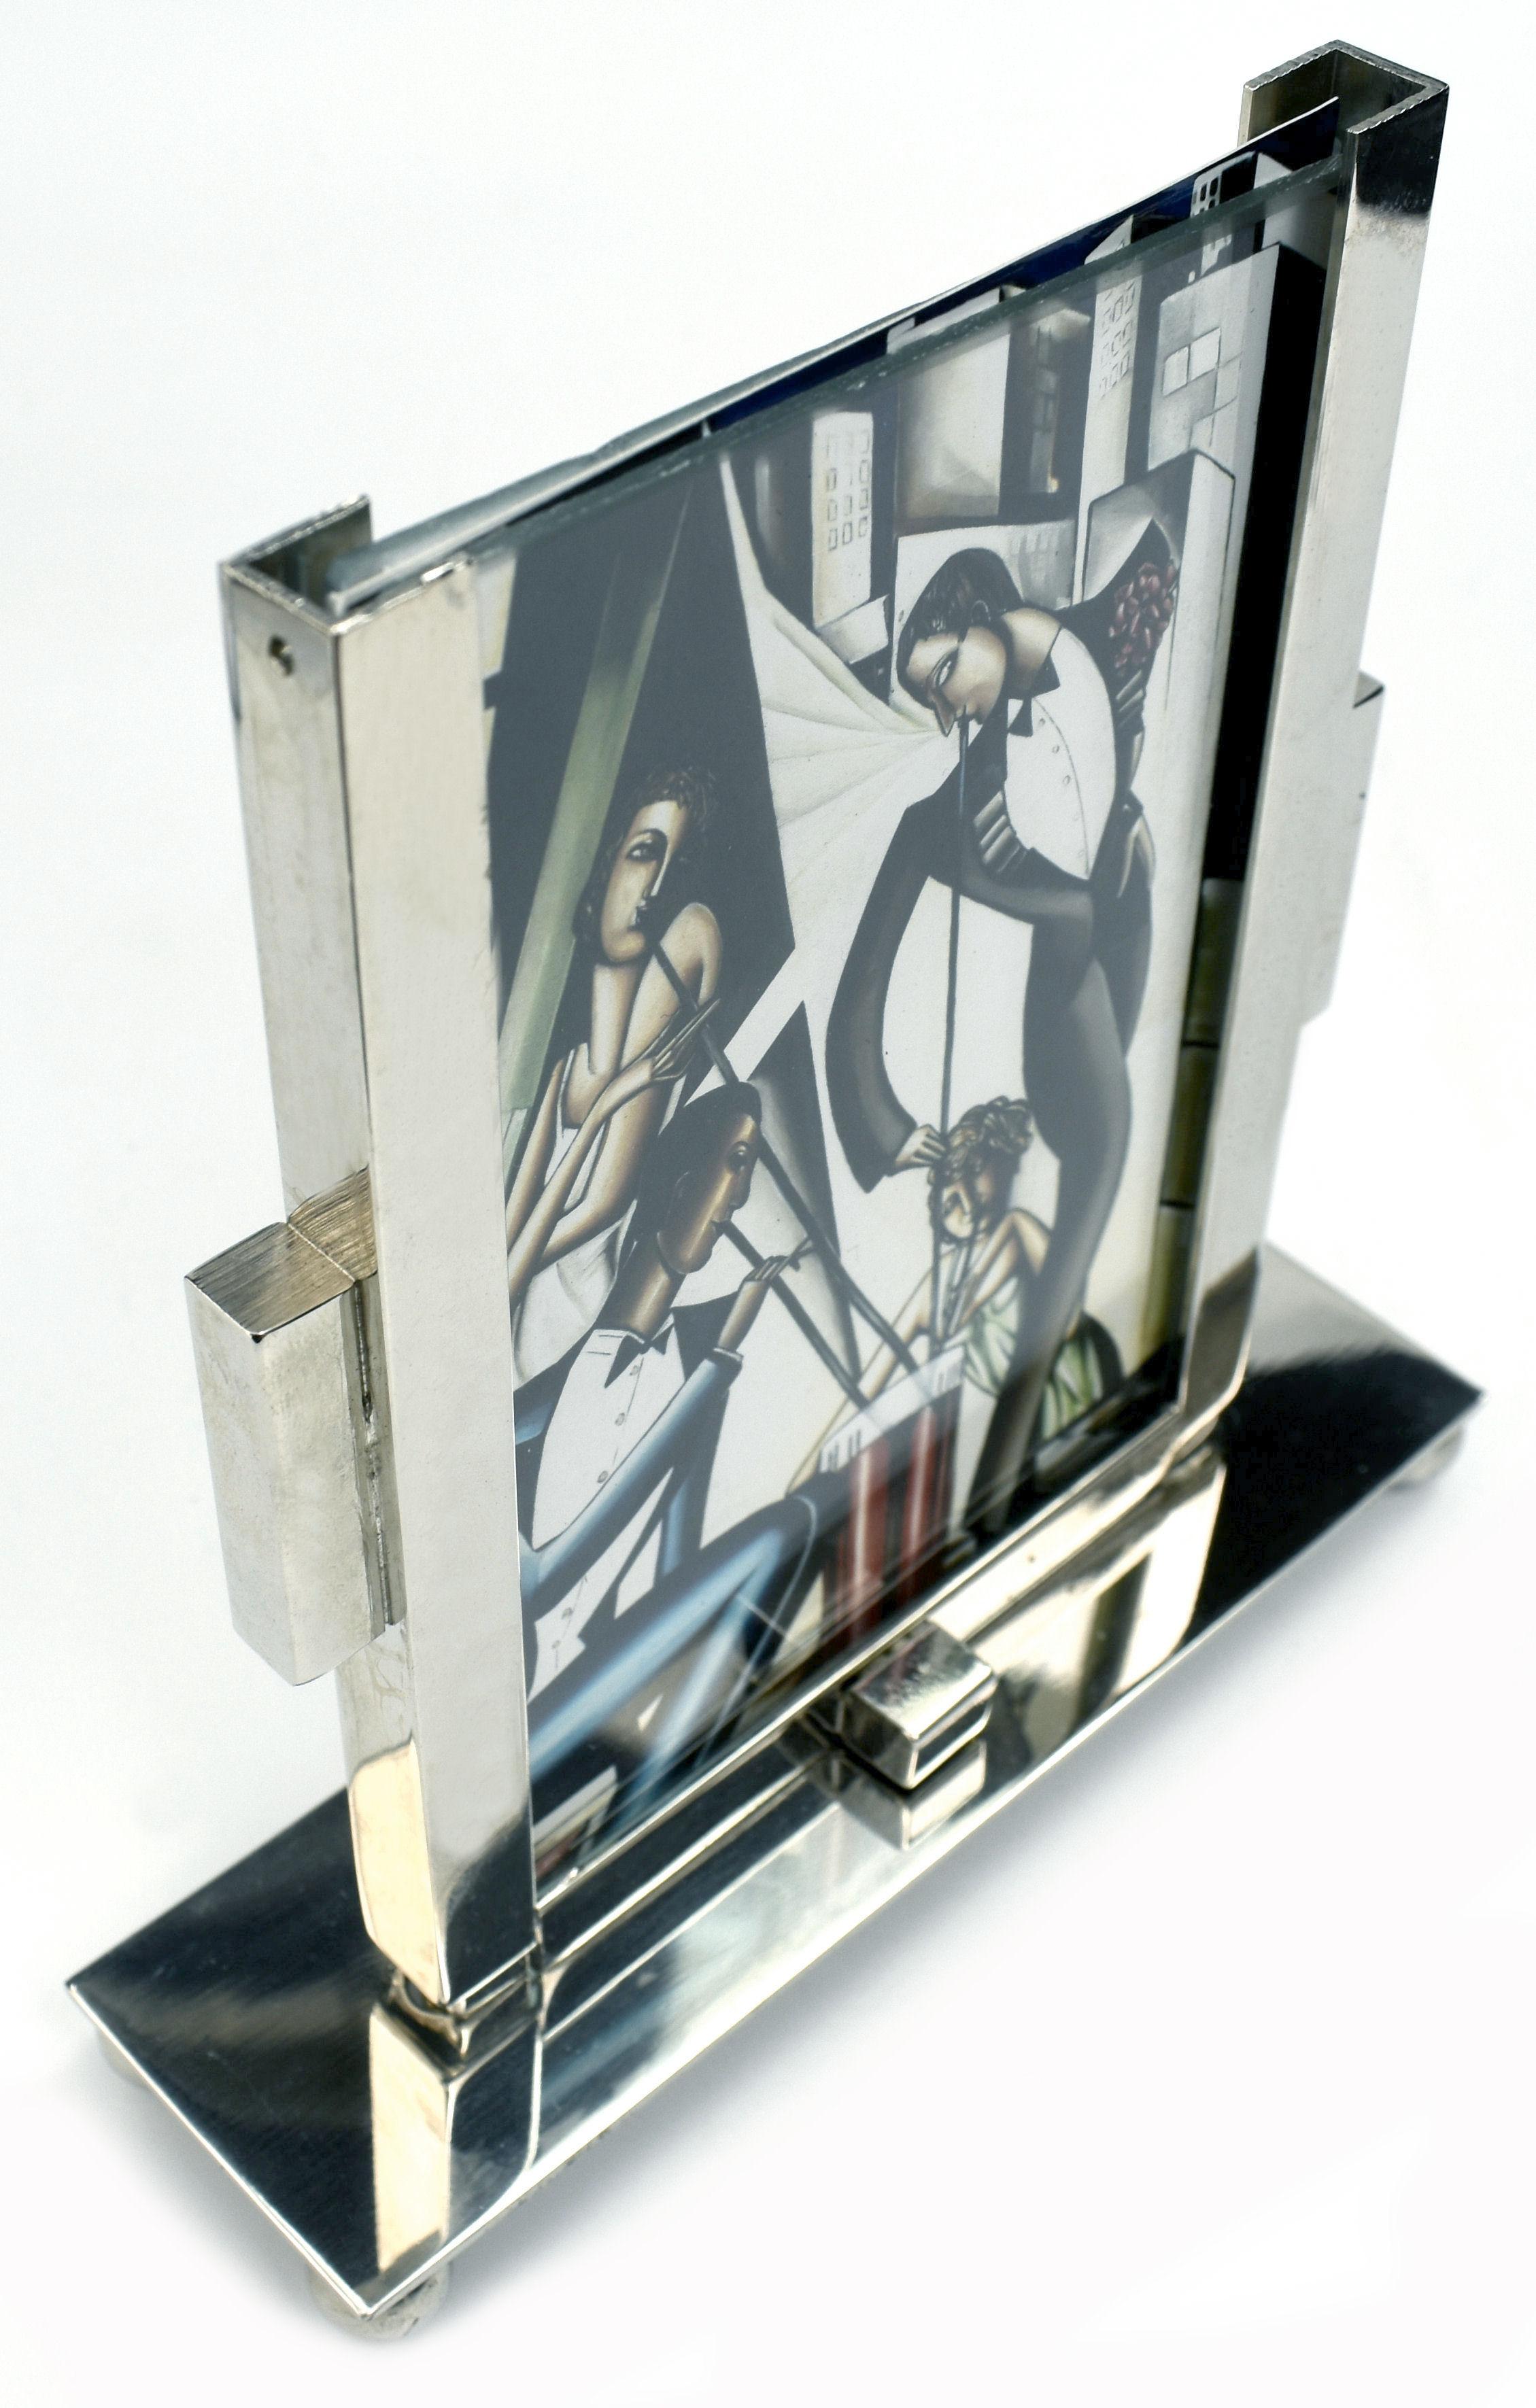 Super stylischer Art Deco Modernist Bilderrahmen aus Chrom und Glas aus den 1930er Jahren. Der Rahmen besteht aus zwei Glasscheiben, die in den verchromten Ständer eingesteckt werden, so dass ein Bild auf beiden Seiten des freistehenden Rahmens